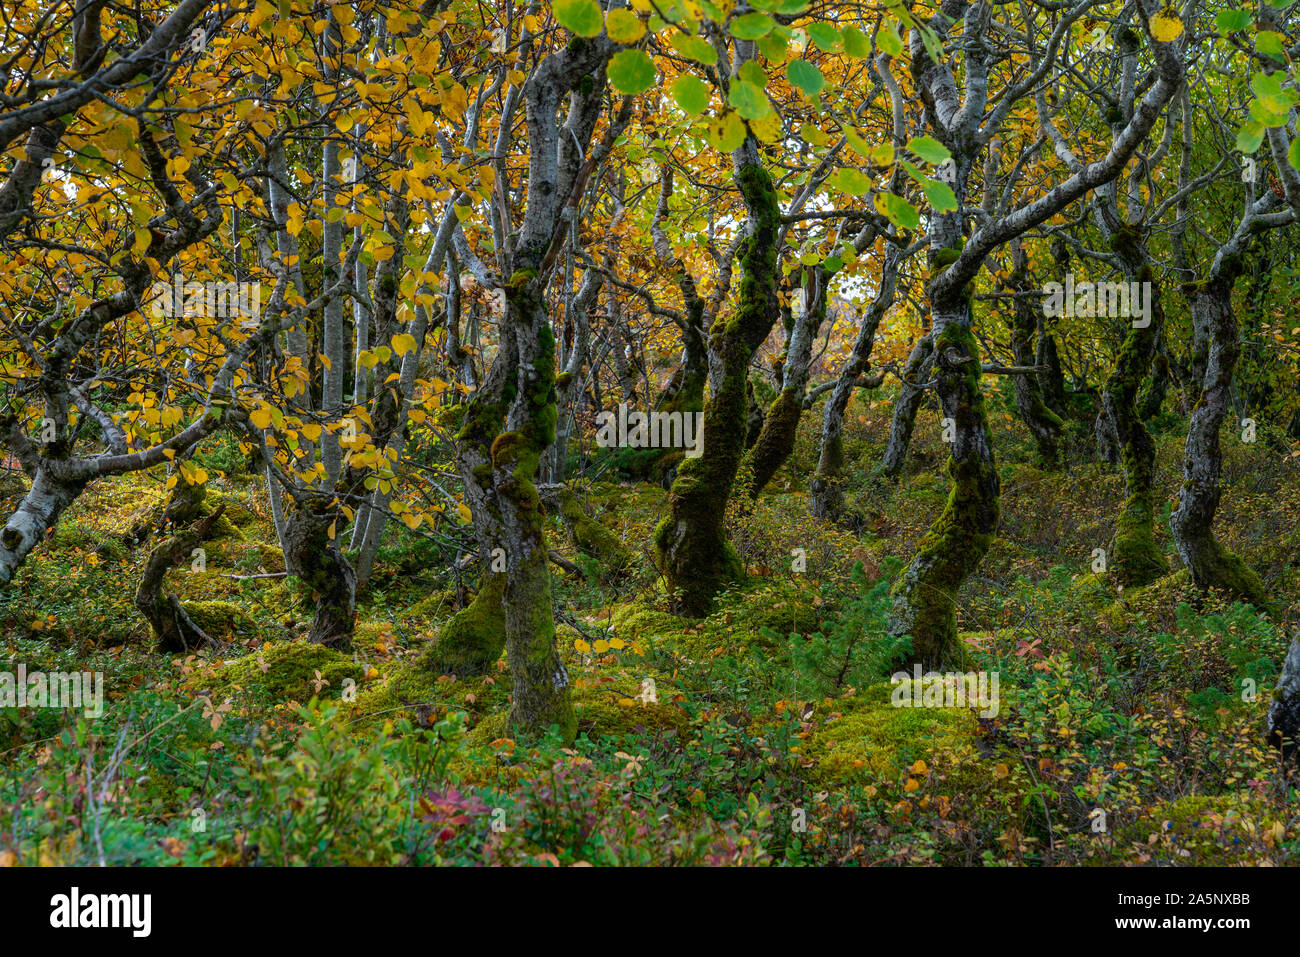 Geheimnis Wald, alte Bäume in einem kleinen Wald in der Nähe von berühmten Berg Torghatten, Helgeland, Norden Norwegens. Herbst 2019 Stockfoto